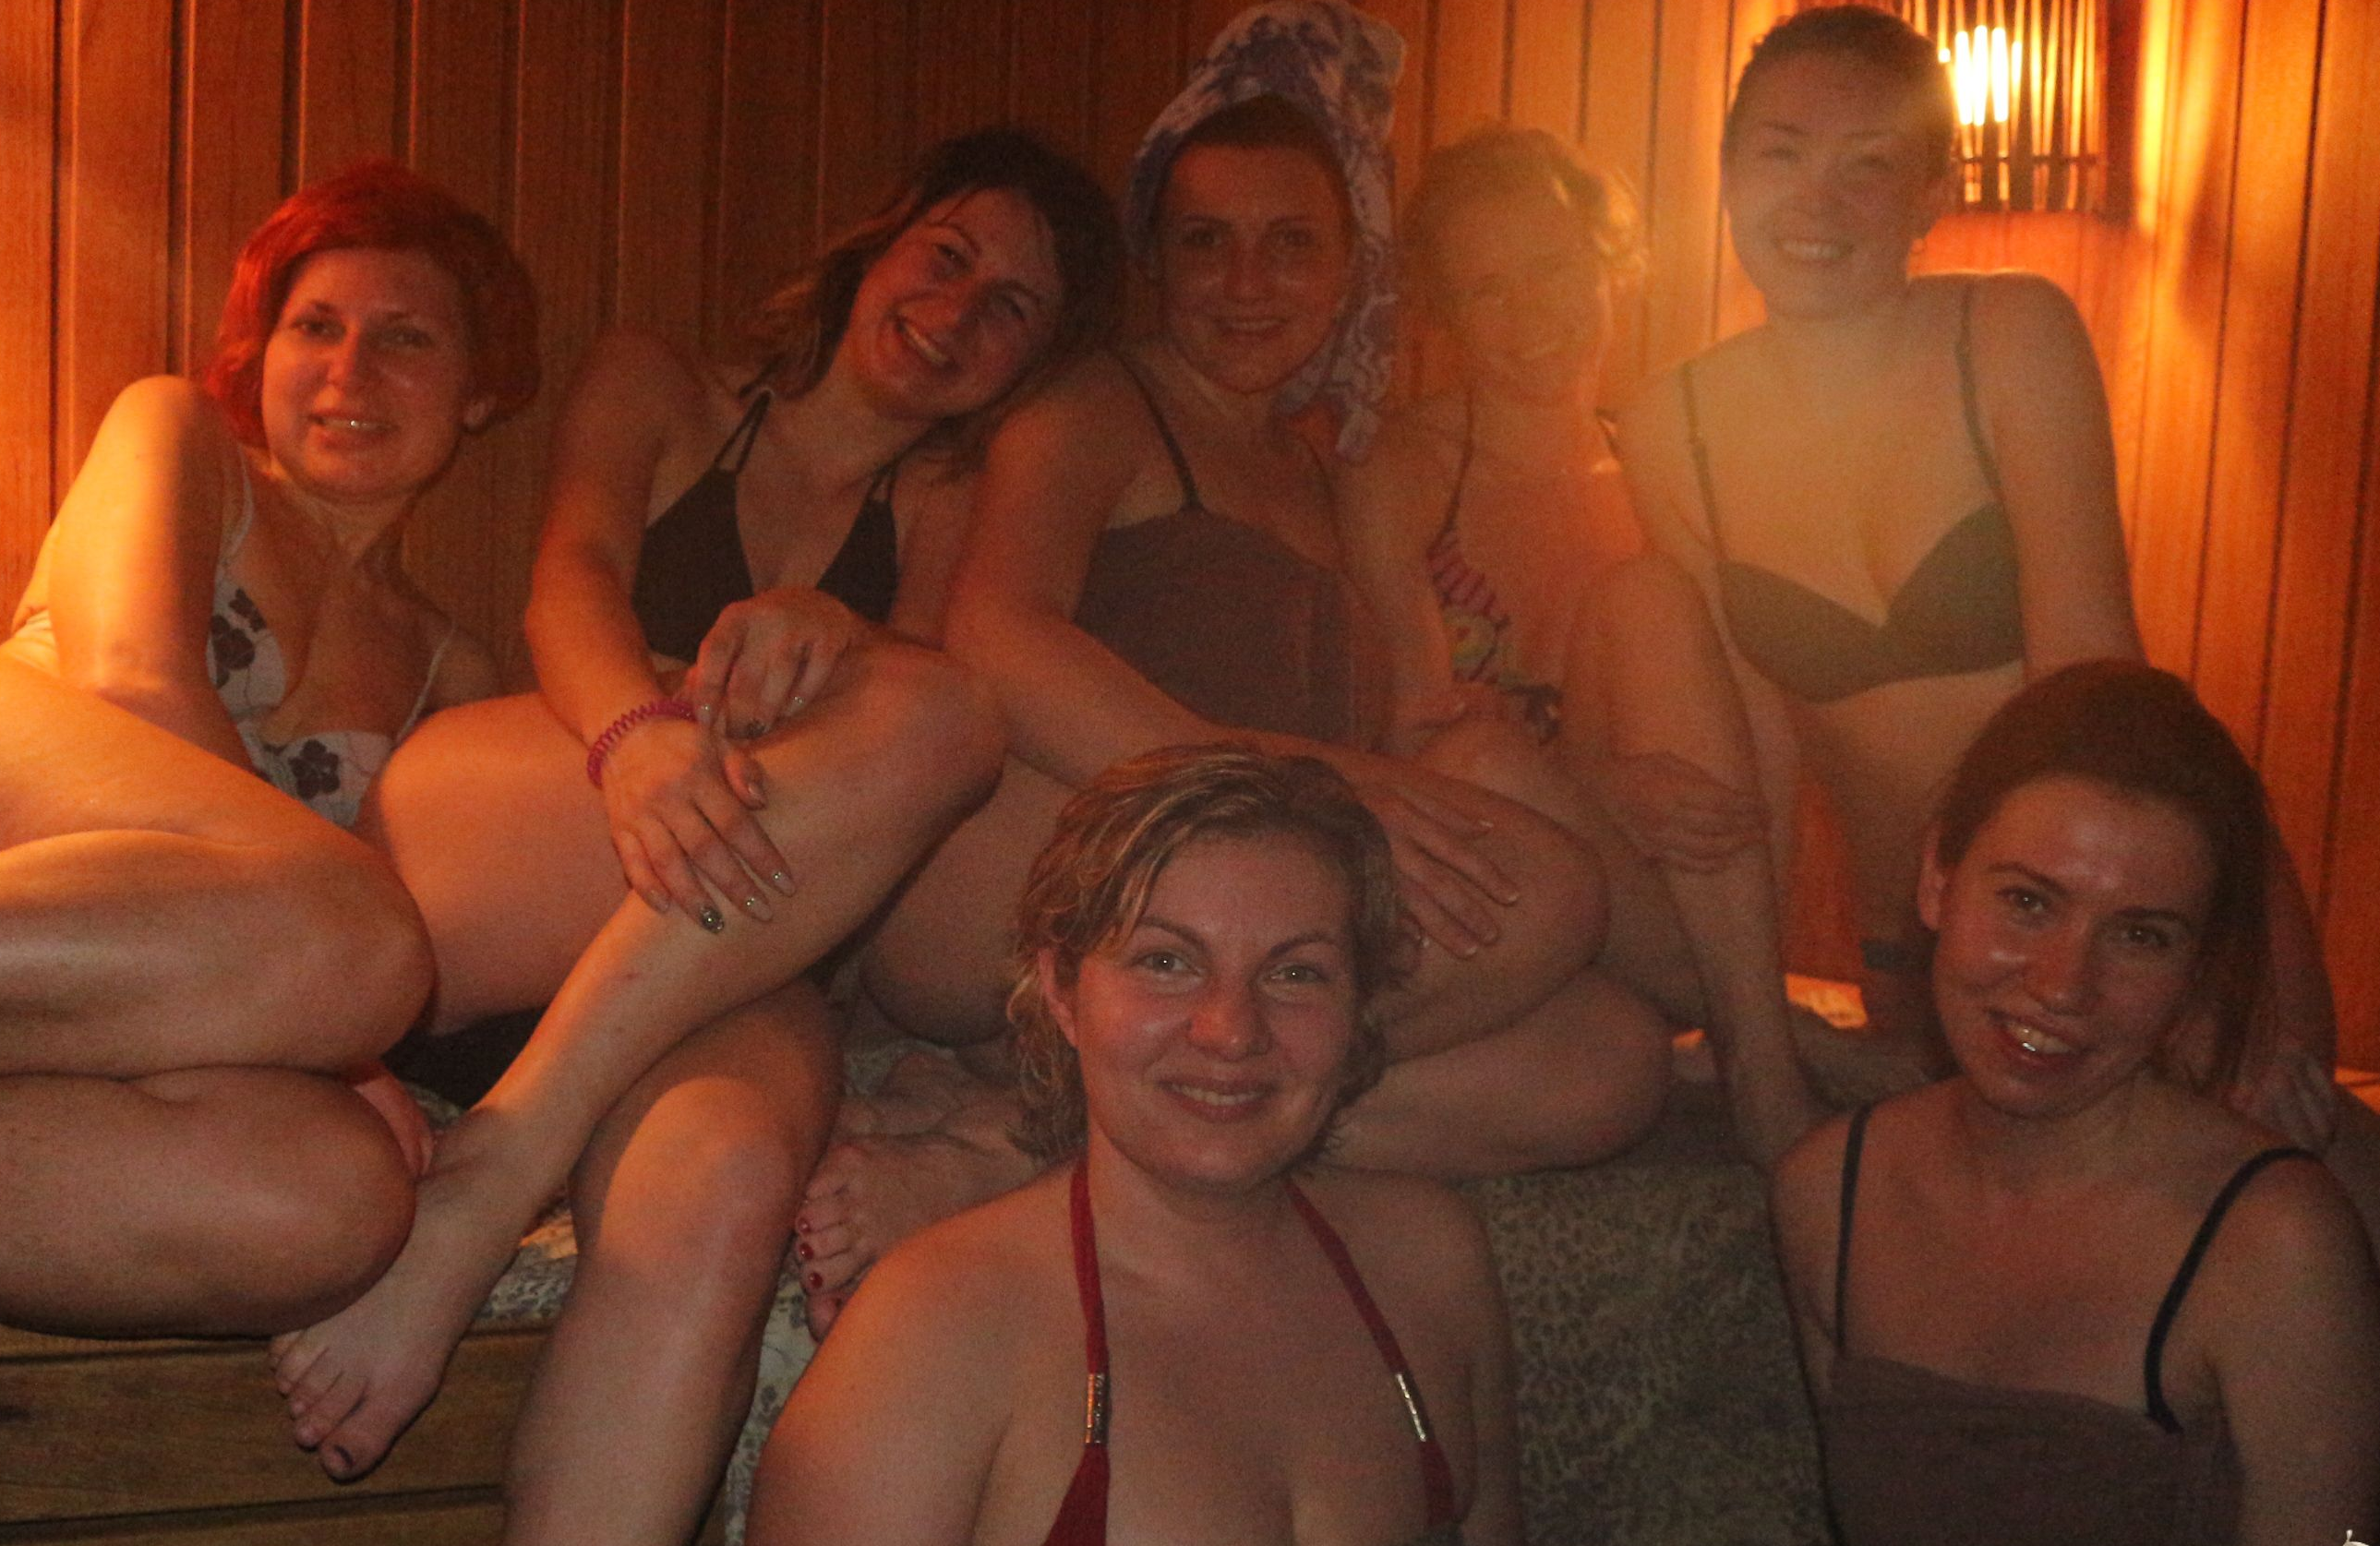 семейные свингеры в бане русские фото 75